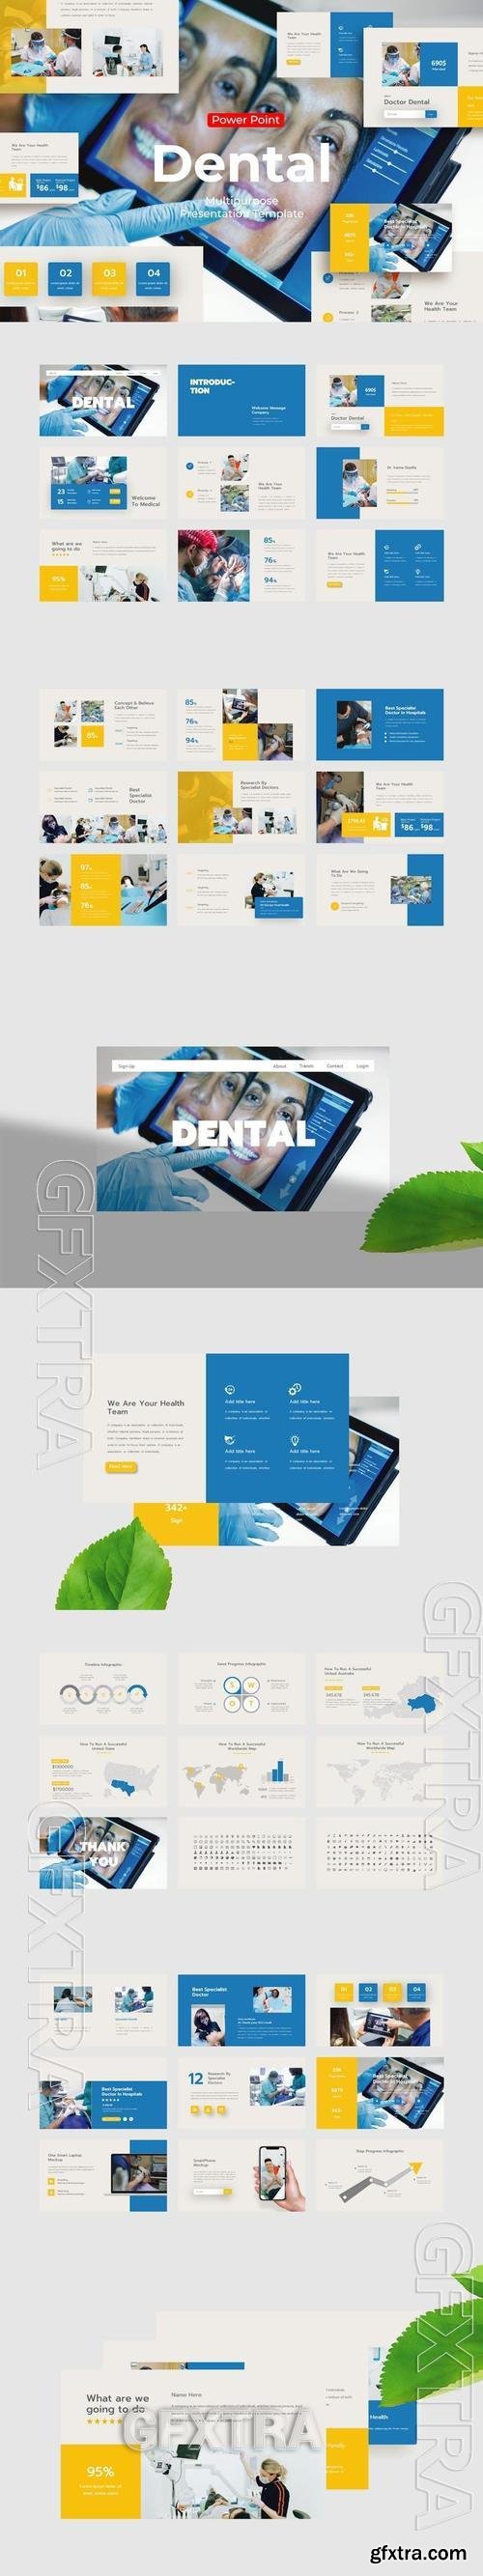 Dental - PowerPoint Template X2DB45Z